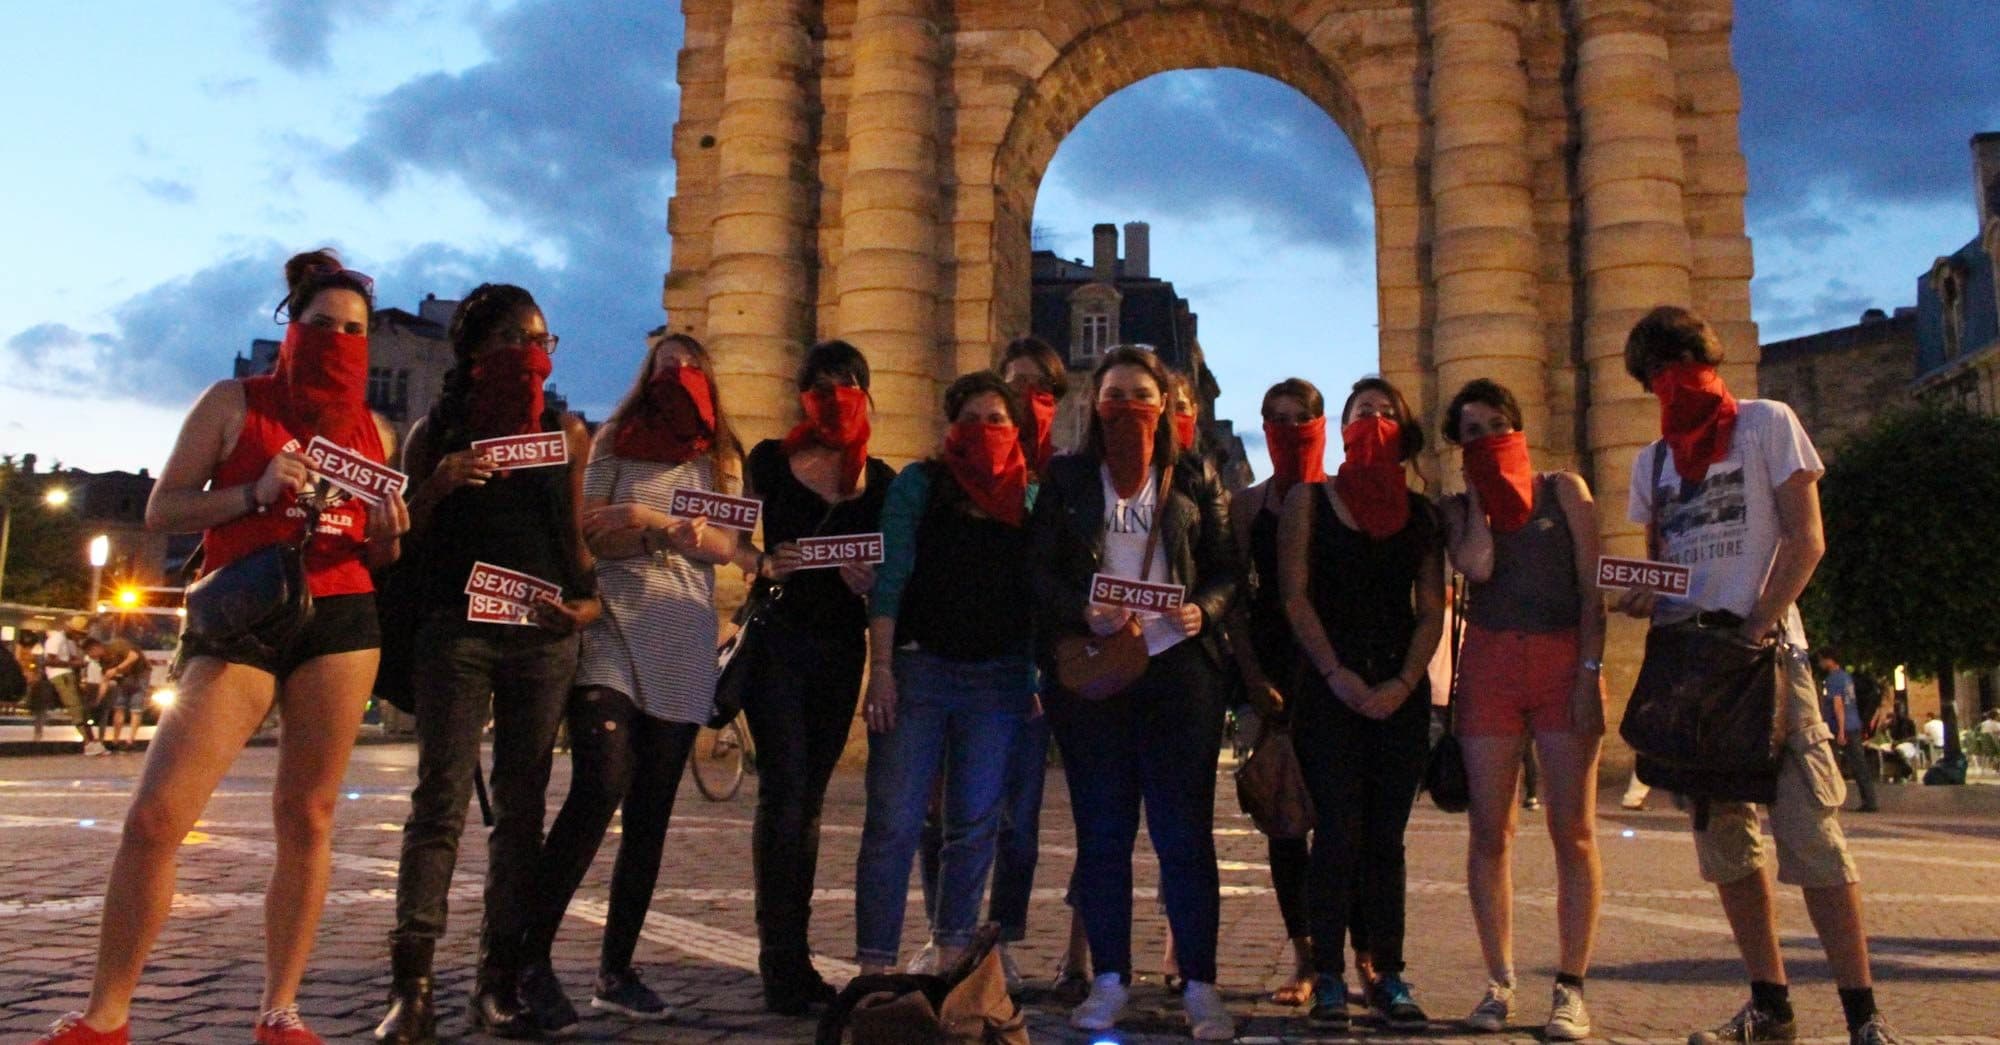 Une brigade veut chasser le sexisme hors les murs de Bordeaux